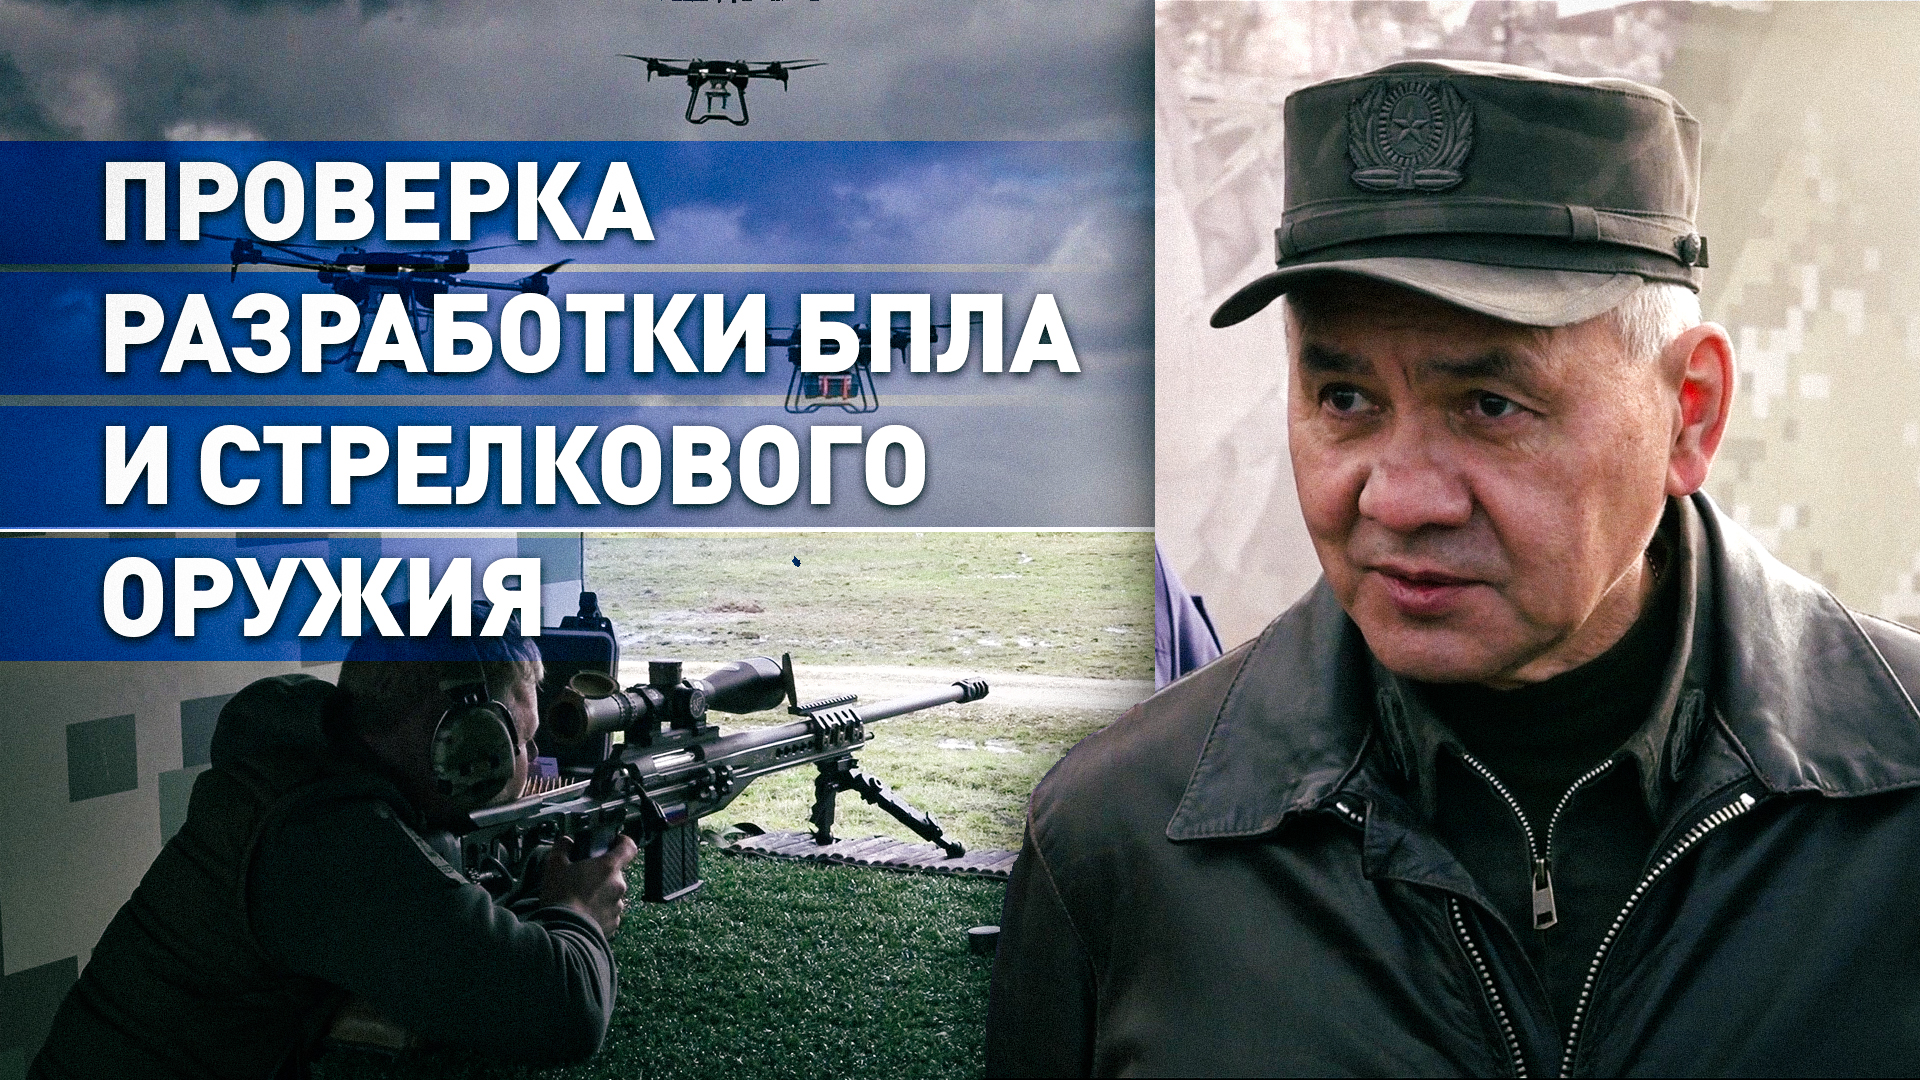 Сделано в России: Шойгу представили перспективные беспилотники и стрелковое оружие